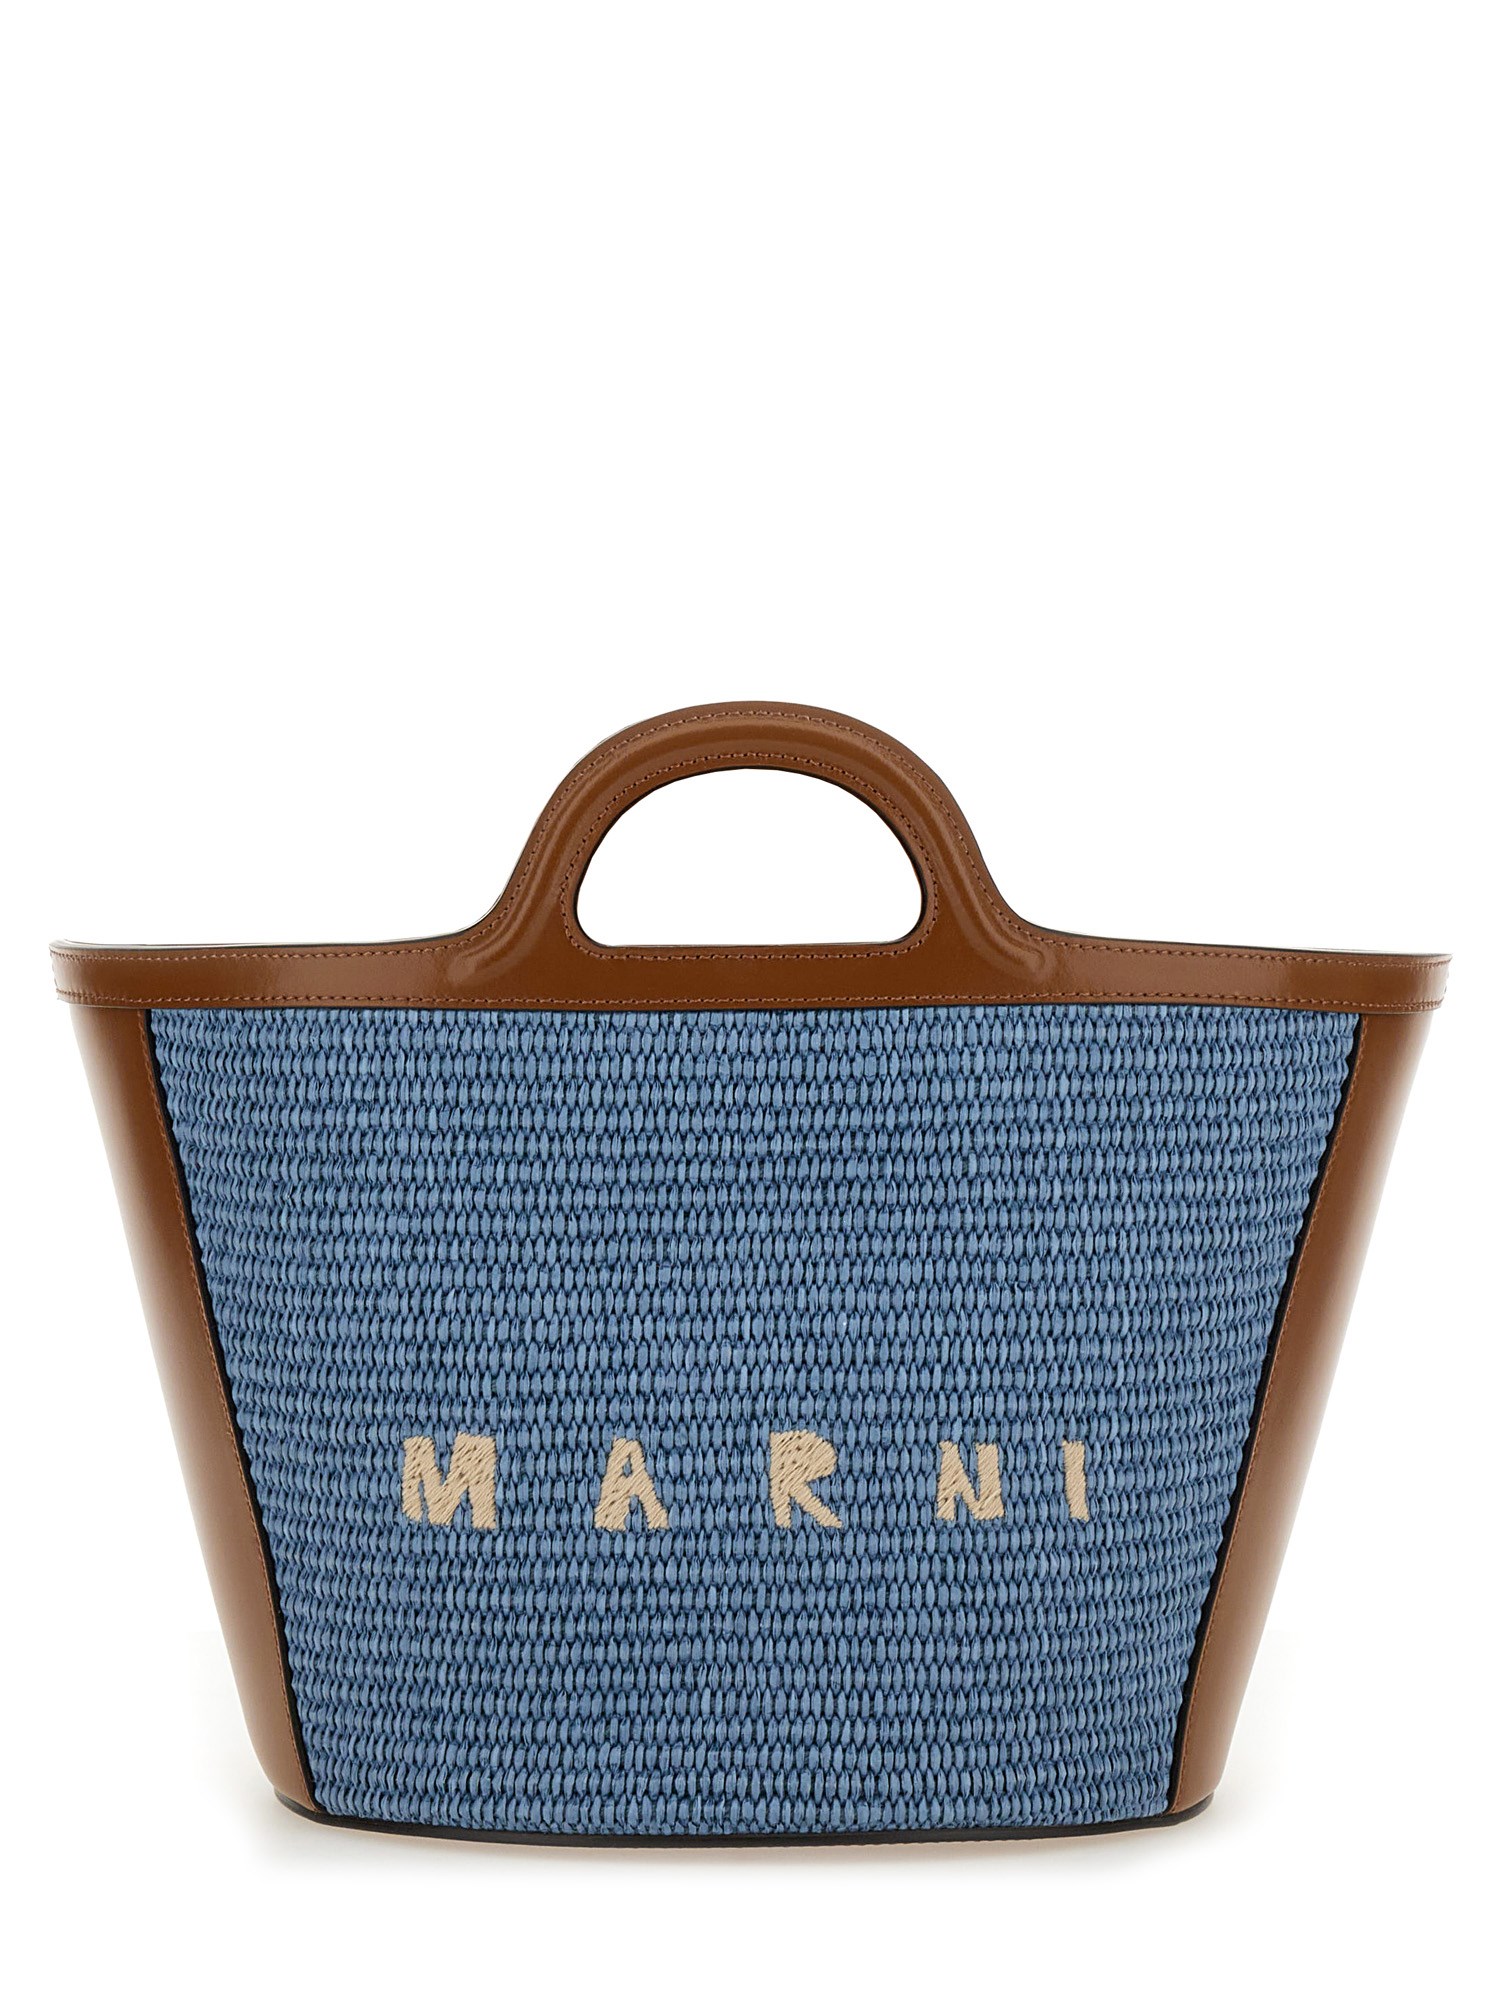 marni tropicalia small bag